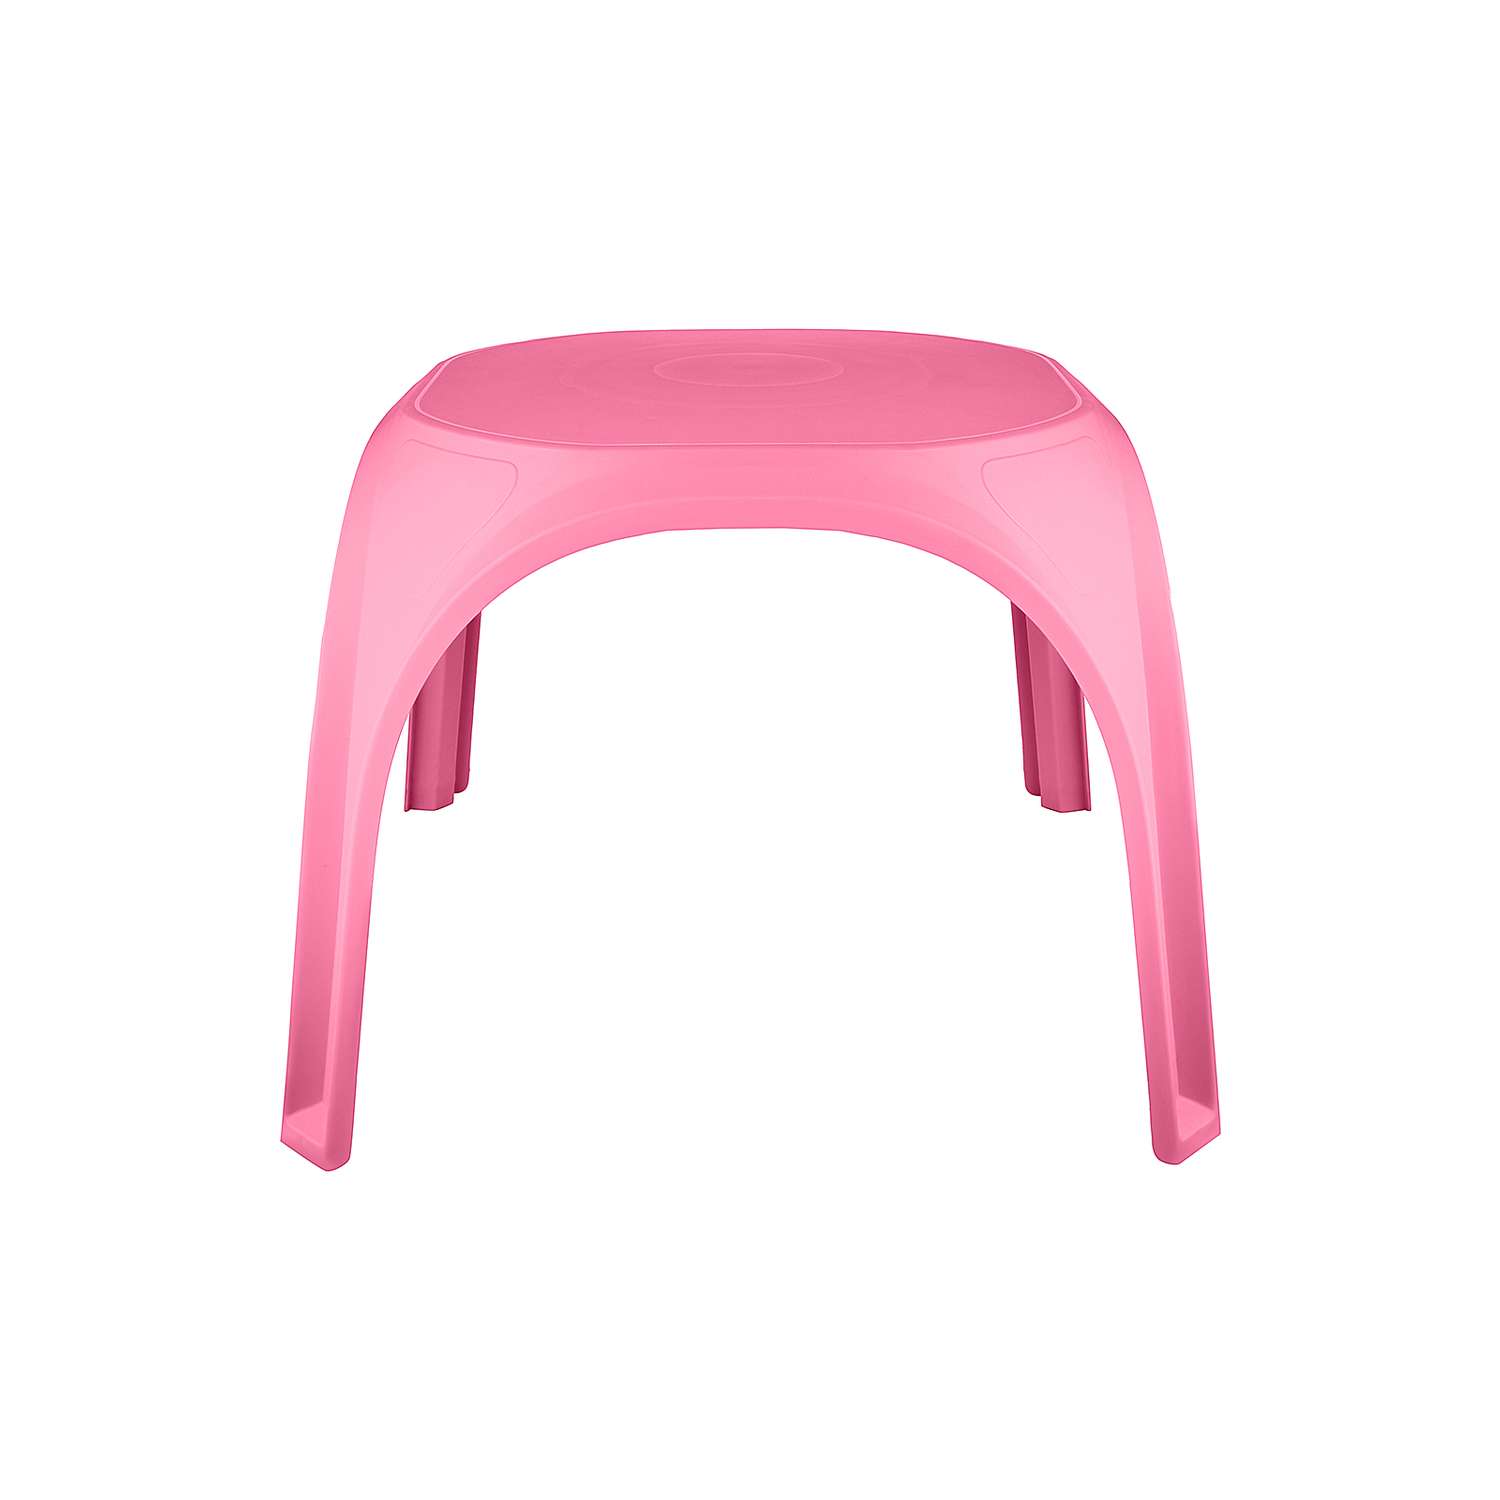 Стол десткий KETT-UP ОСЬМИНОЖКА пластиковый розовый - фото 2